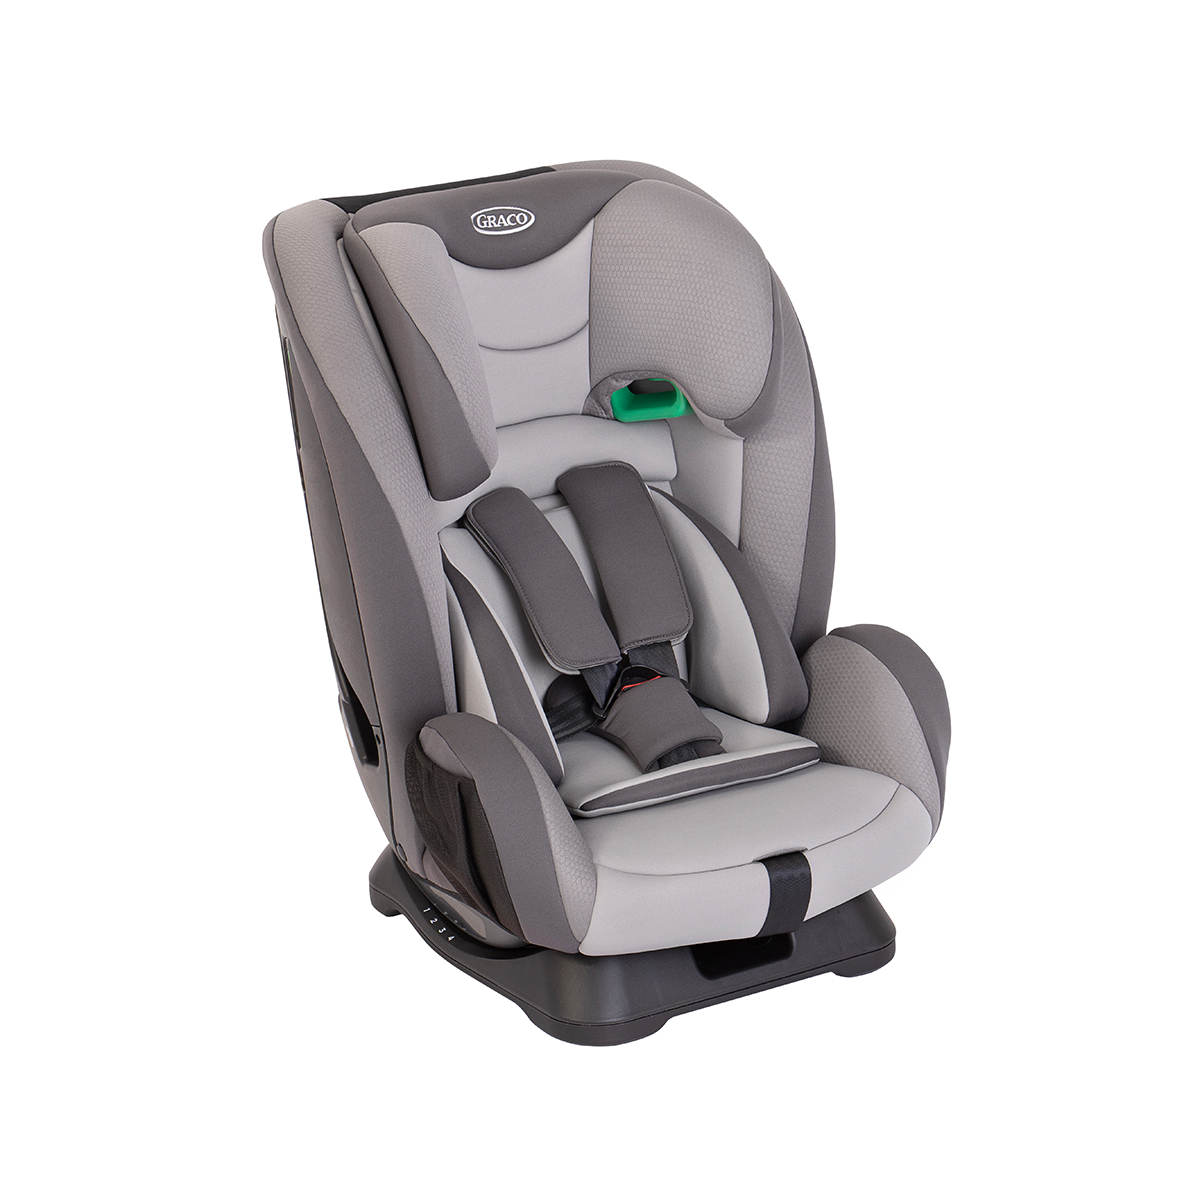 Dreiviertel-Winkel des mitwachsenden 2-in-1 Kindersitzes Graco® FlexiGrow™ R129 mit integriertem 5-Punkt-Gurtsystem.
